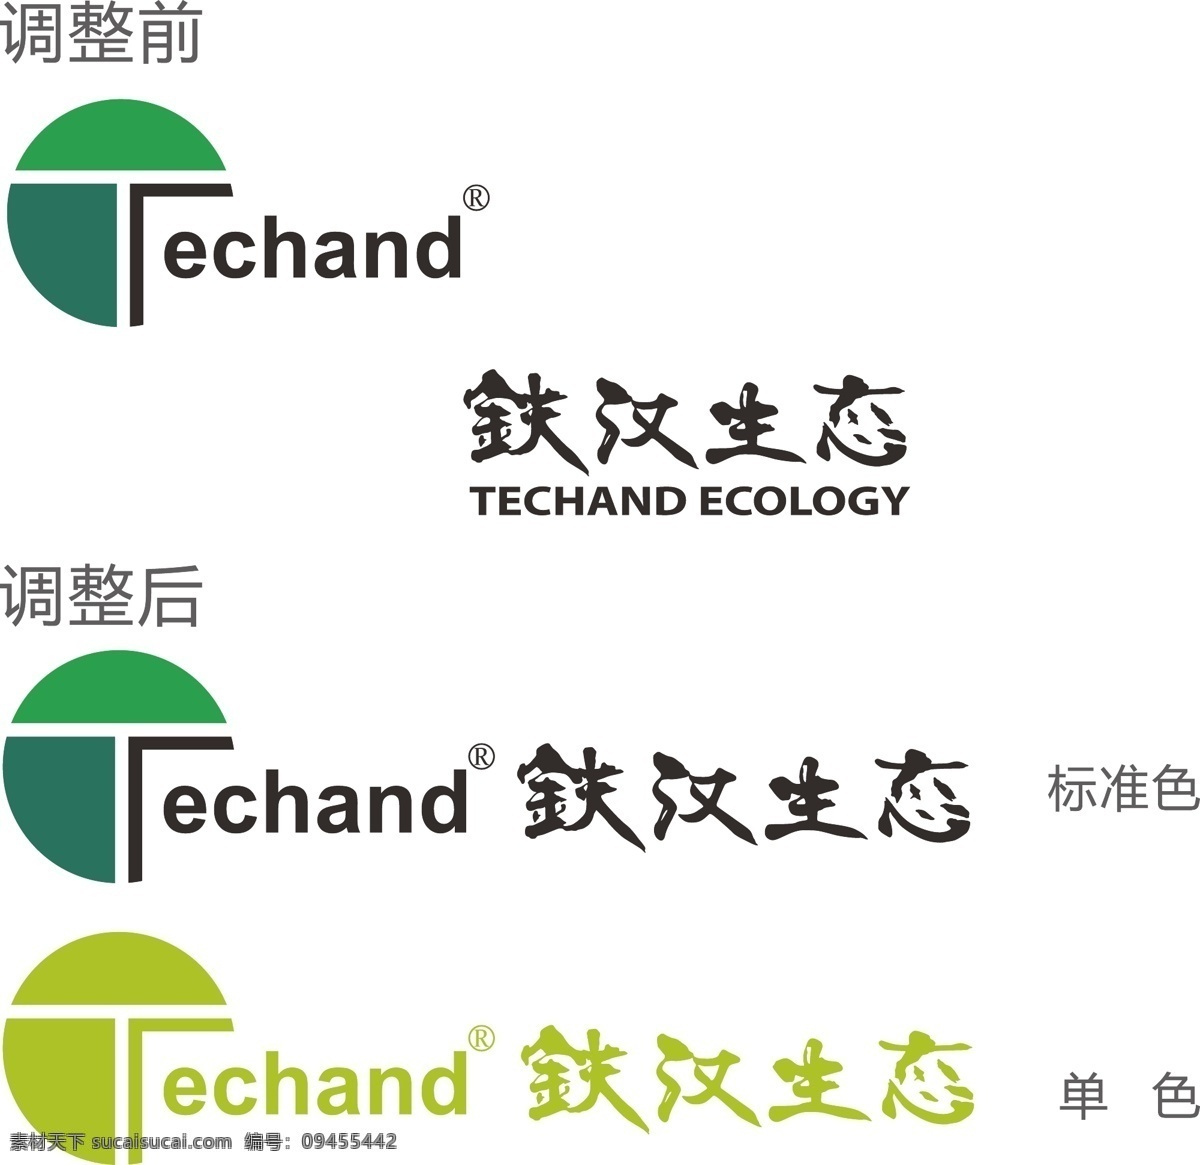 cs5 logo 标识 标识标志图标 标志 环境 企业 商标 铁汉 生态 矢量 模板下载 铁汉生态 股份 有限公司 echand